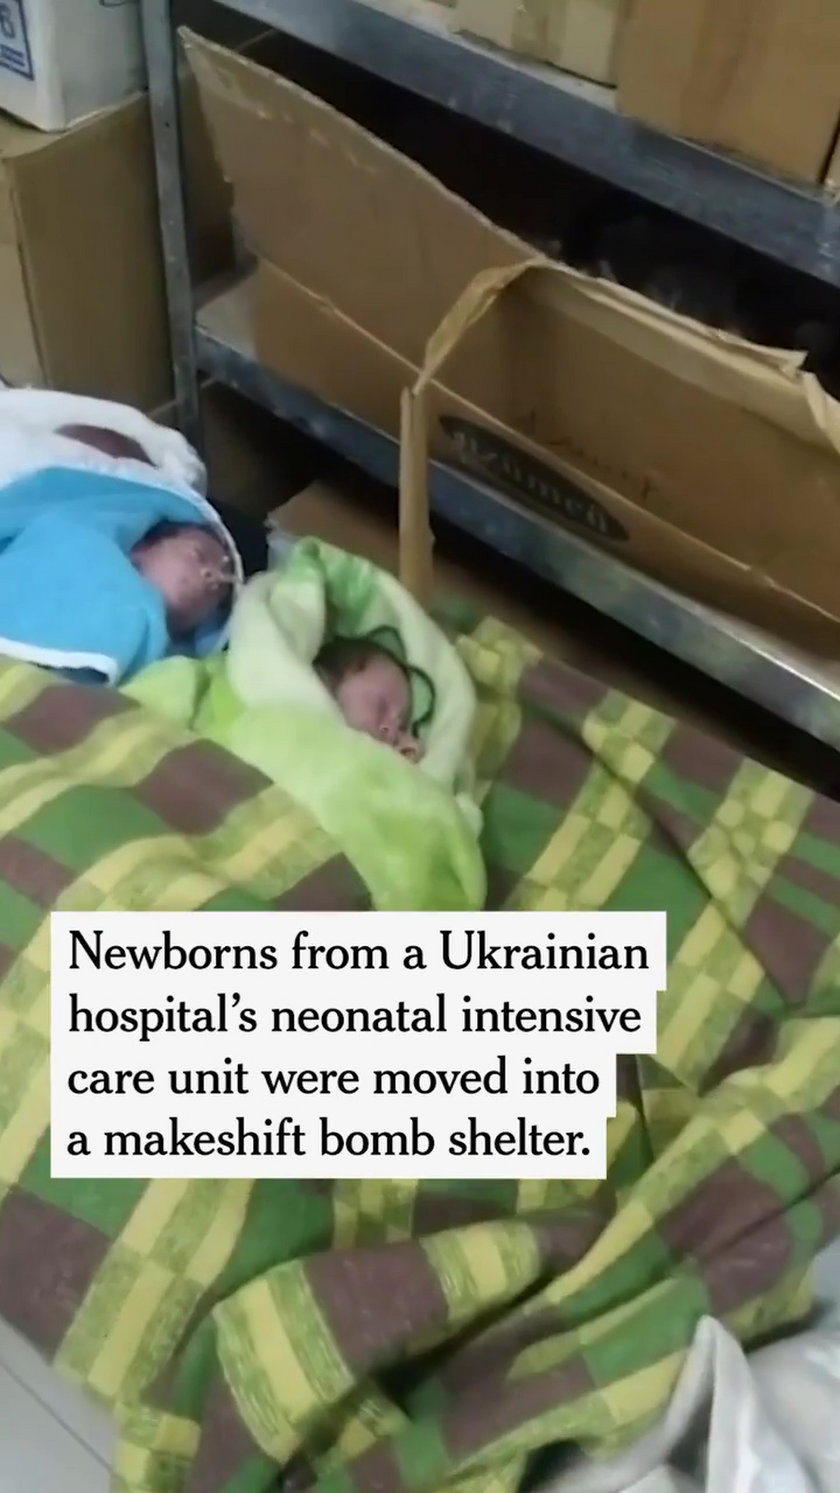 Wstrząsający film ze szpitala w mieście Dniepr opublikowany przez reportera New York Times